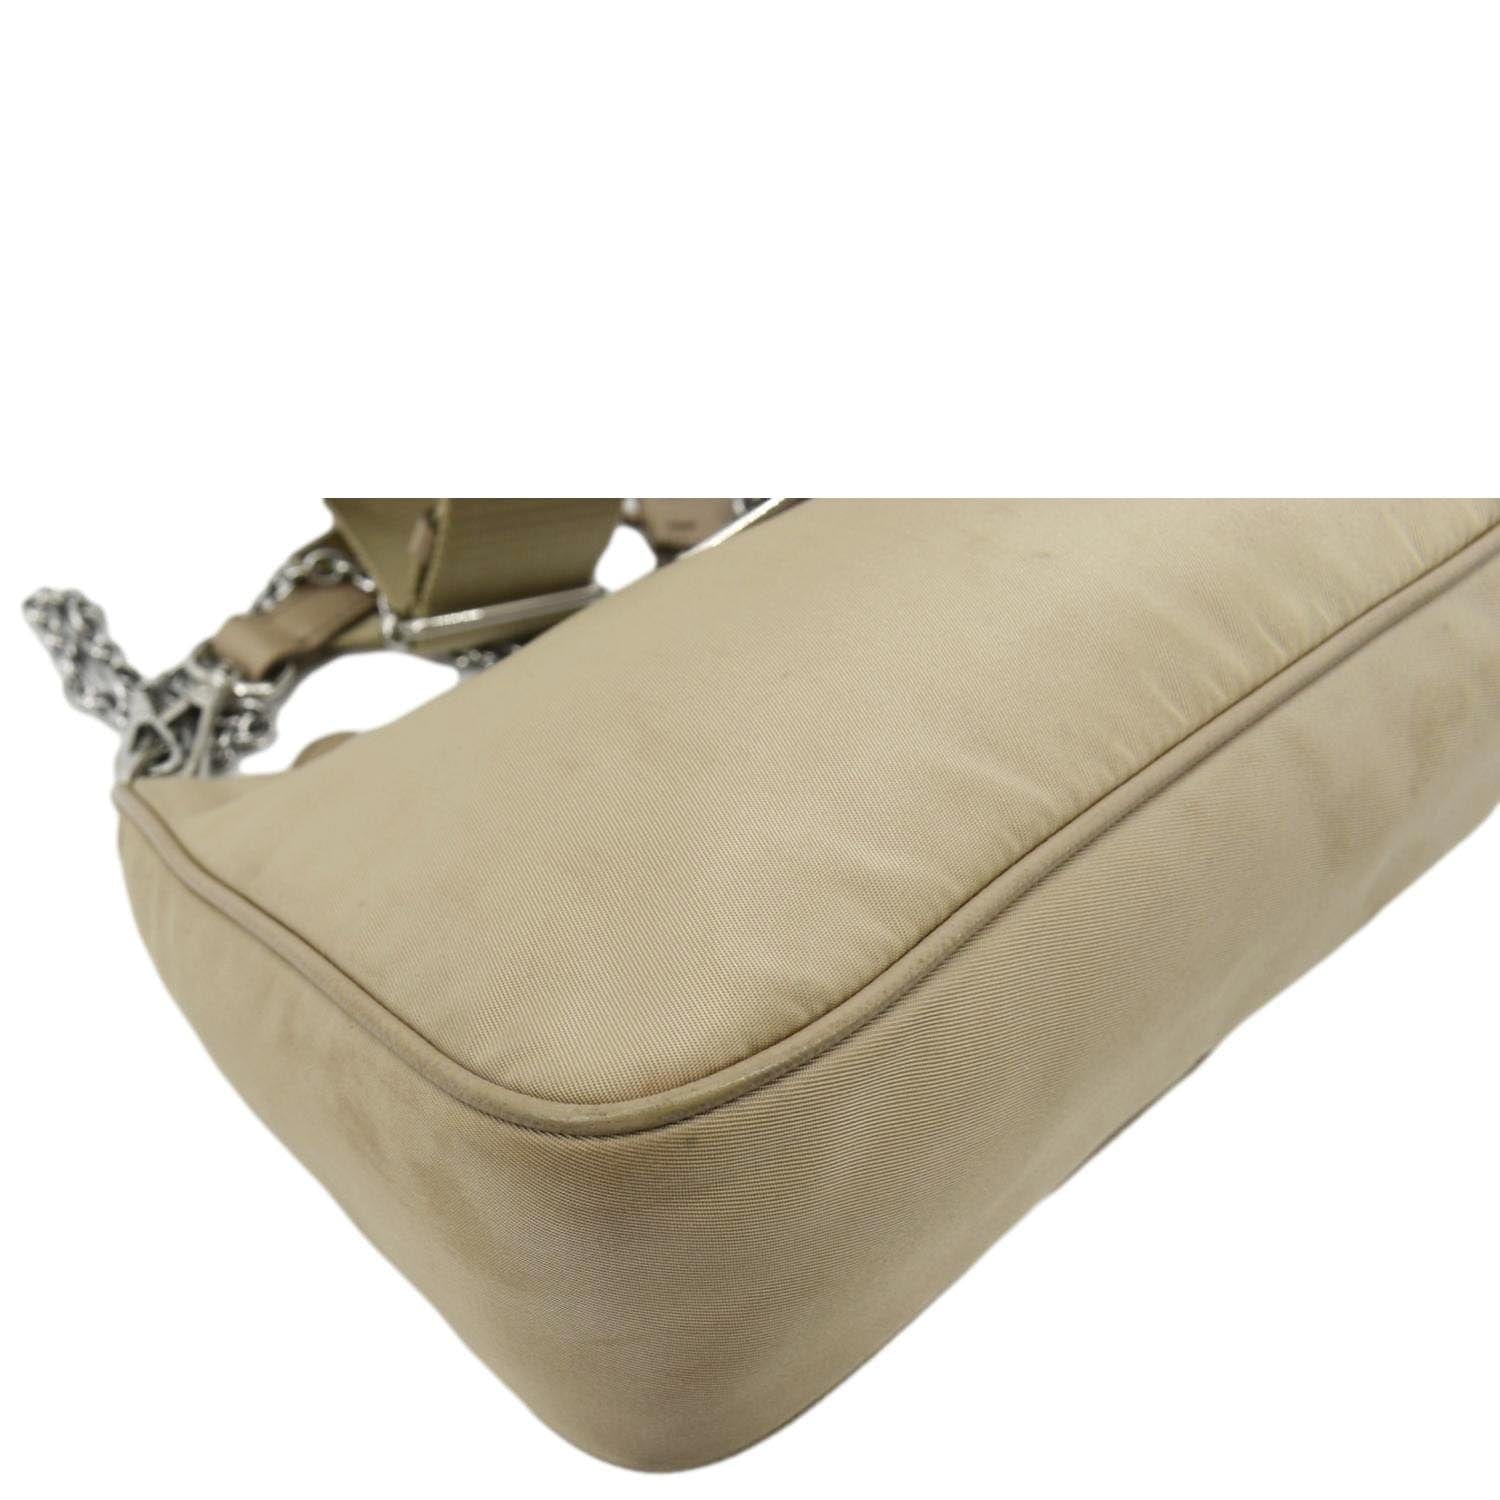 Re-Edition 2005 cloth handbag